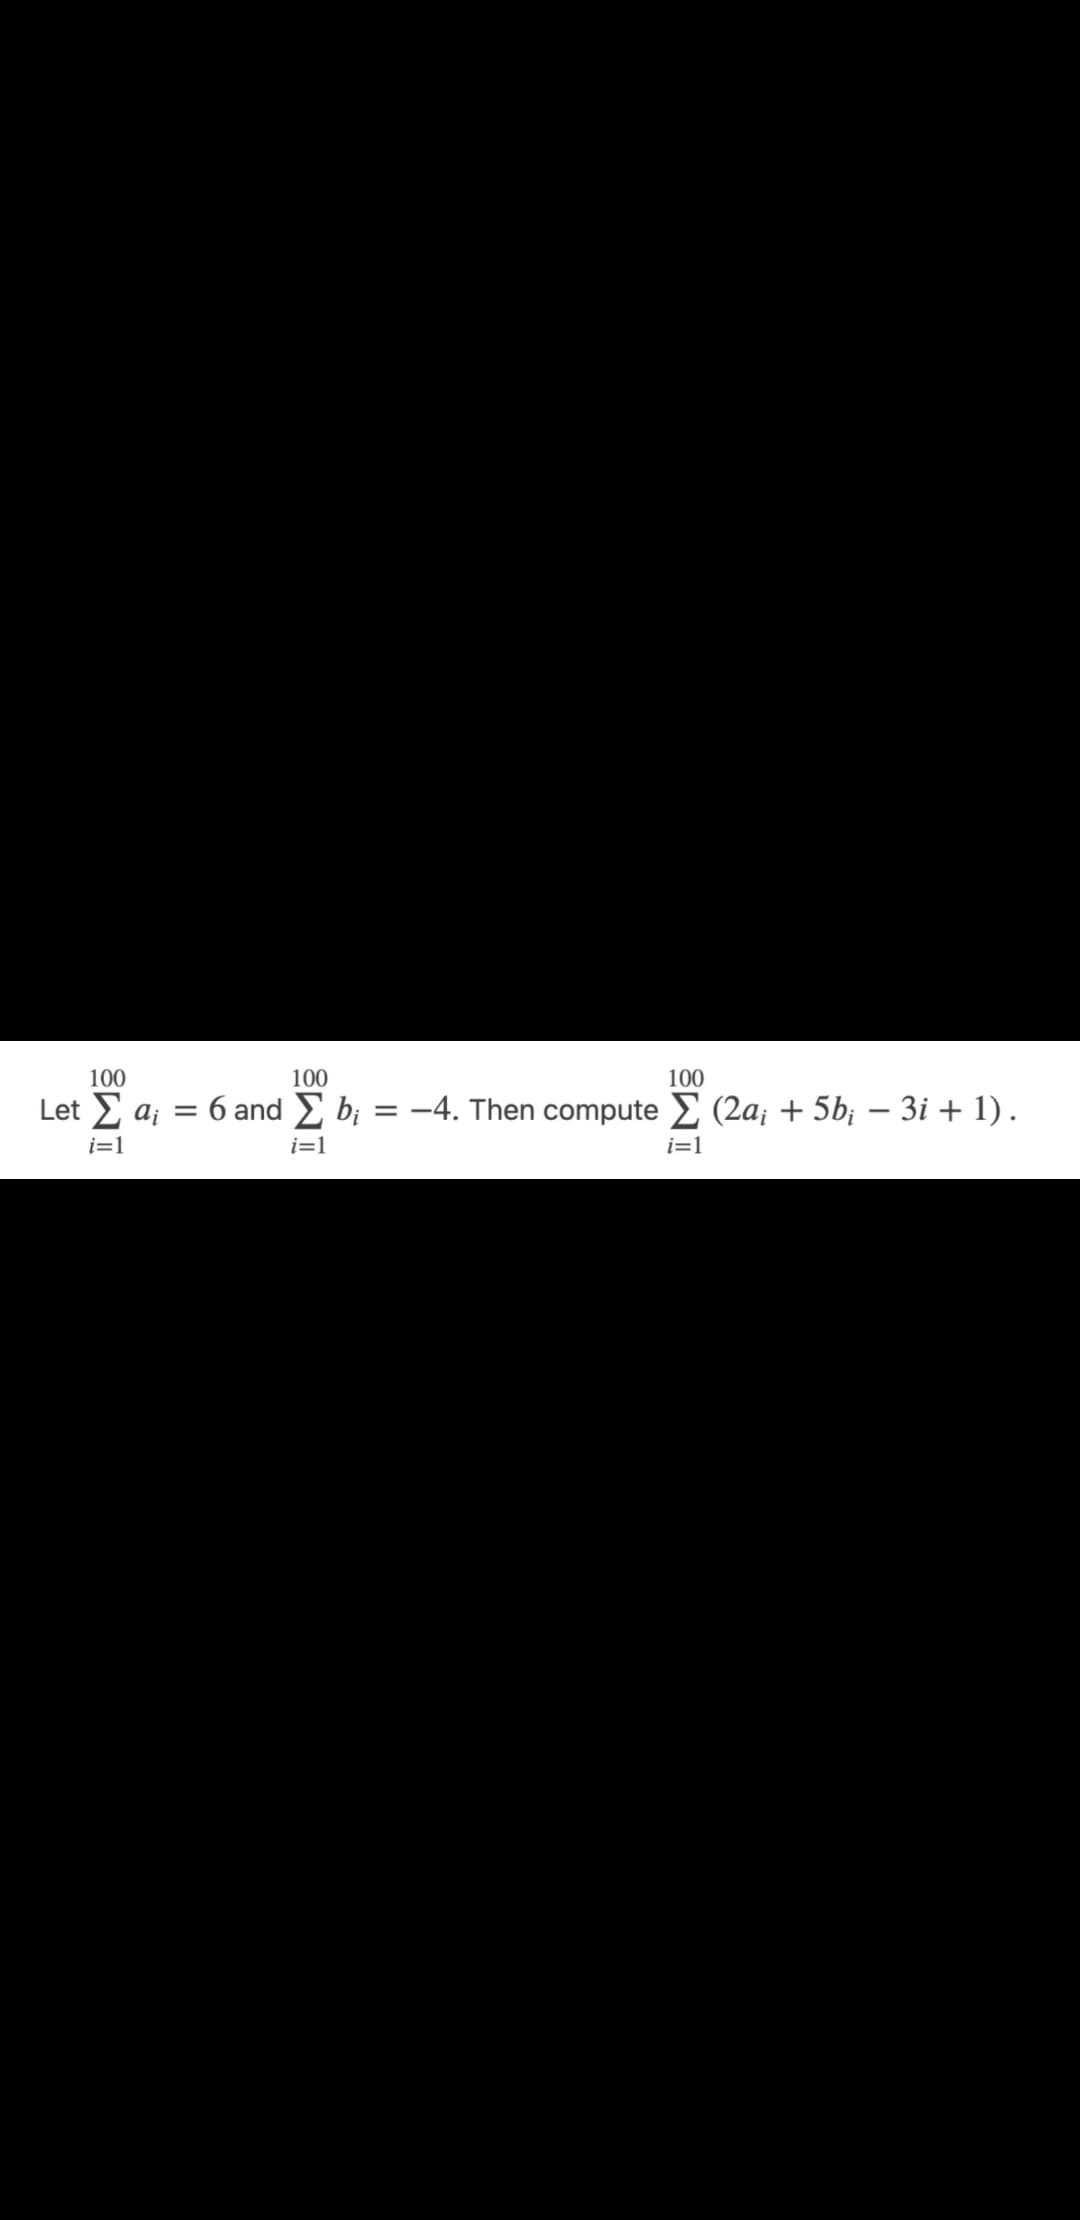 100
100
100
Let Σ a₁ = 6 and b₁ = -4. Then compute Σ (2a; + 5b¡ − 3i + 1) .
i=1
i=1
i=1